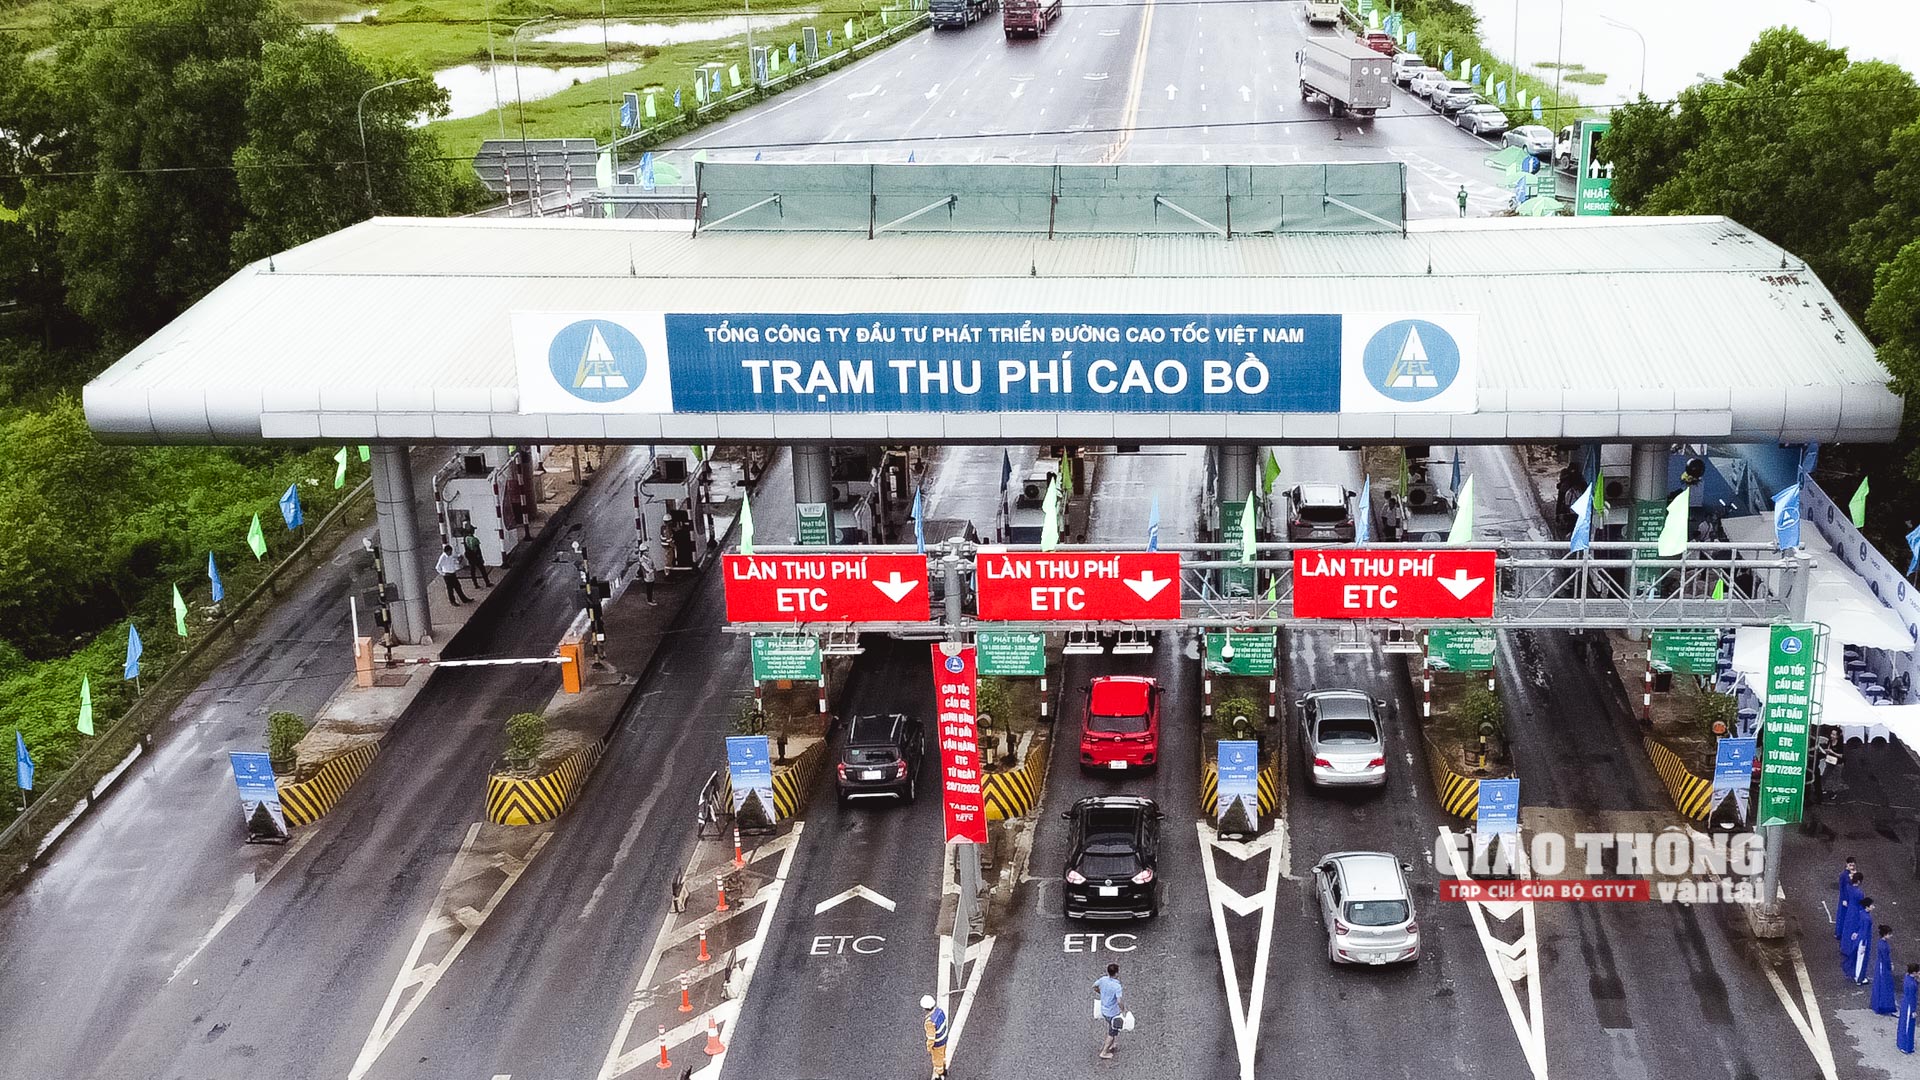 Trạm thu phí Cao Bồ trên cao tốc Cầu Giẽ - Ninh Bình